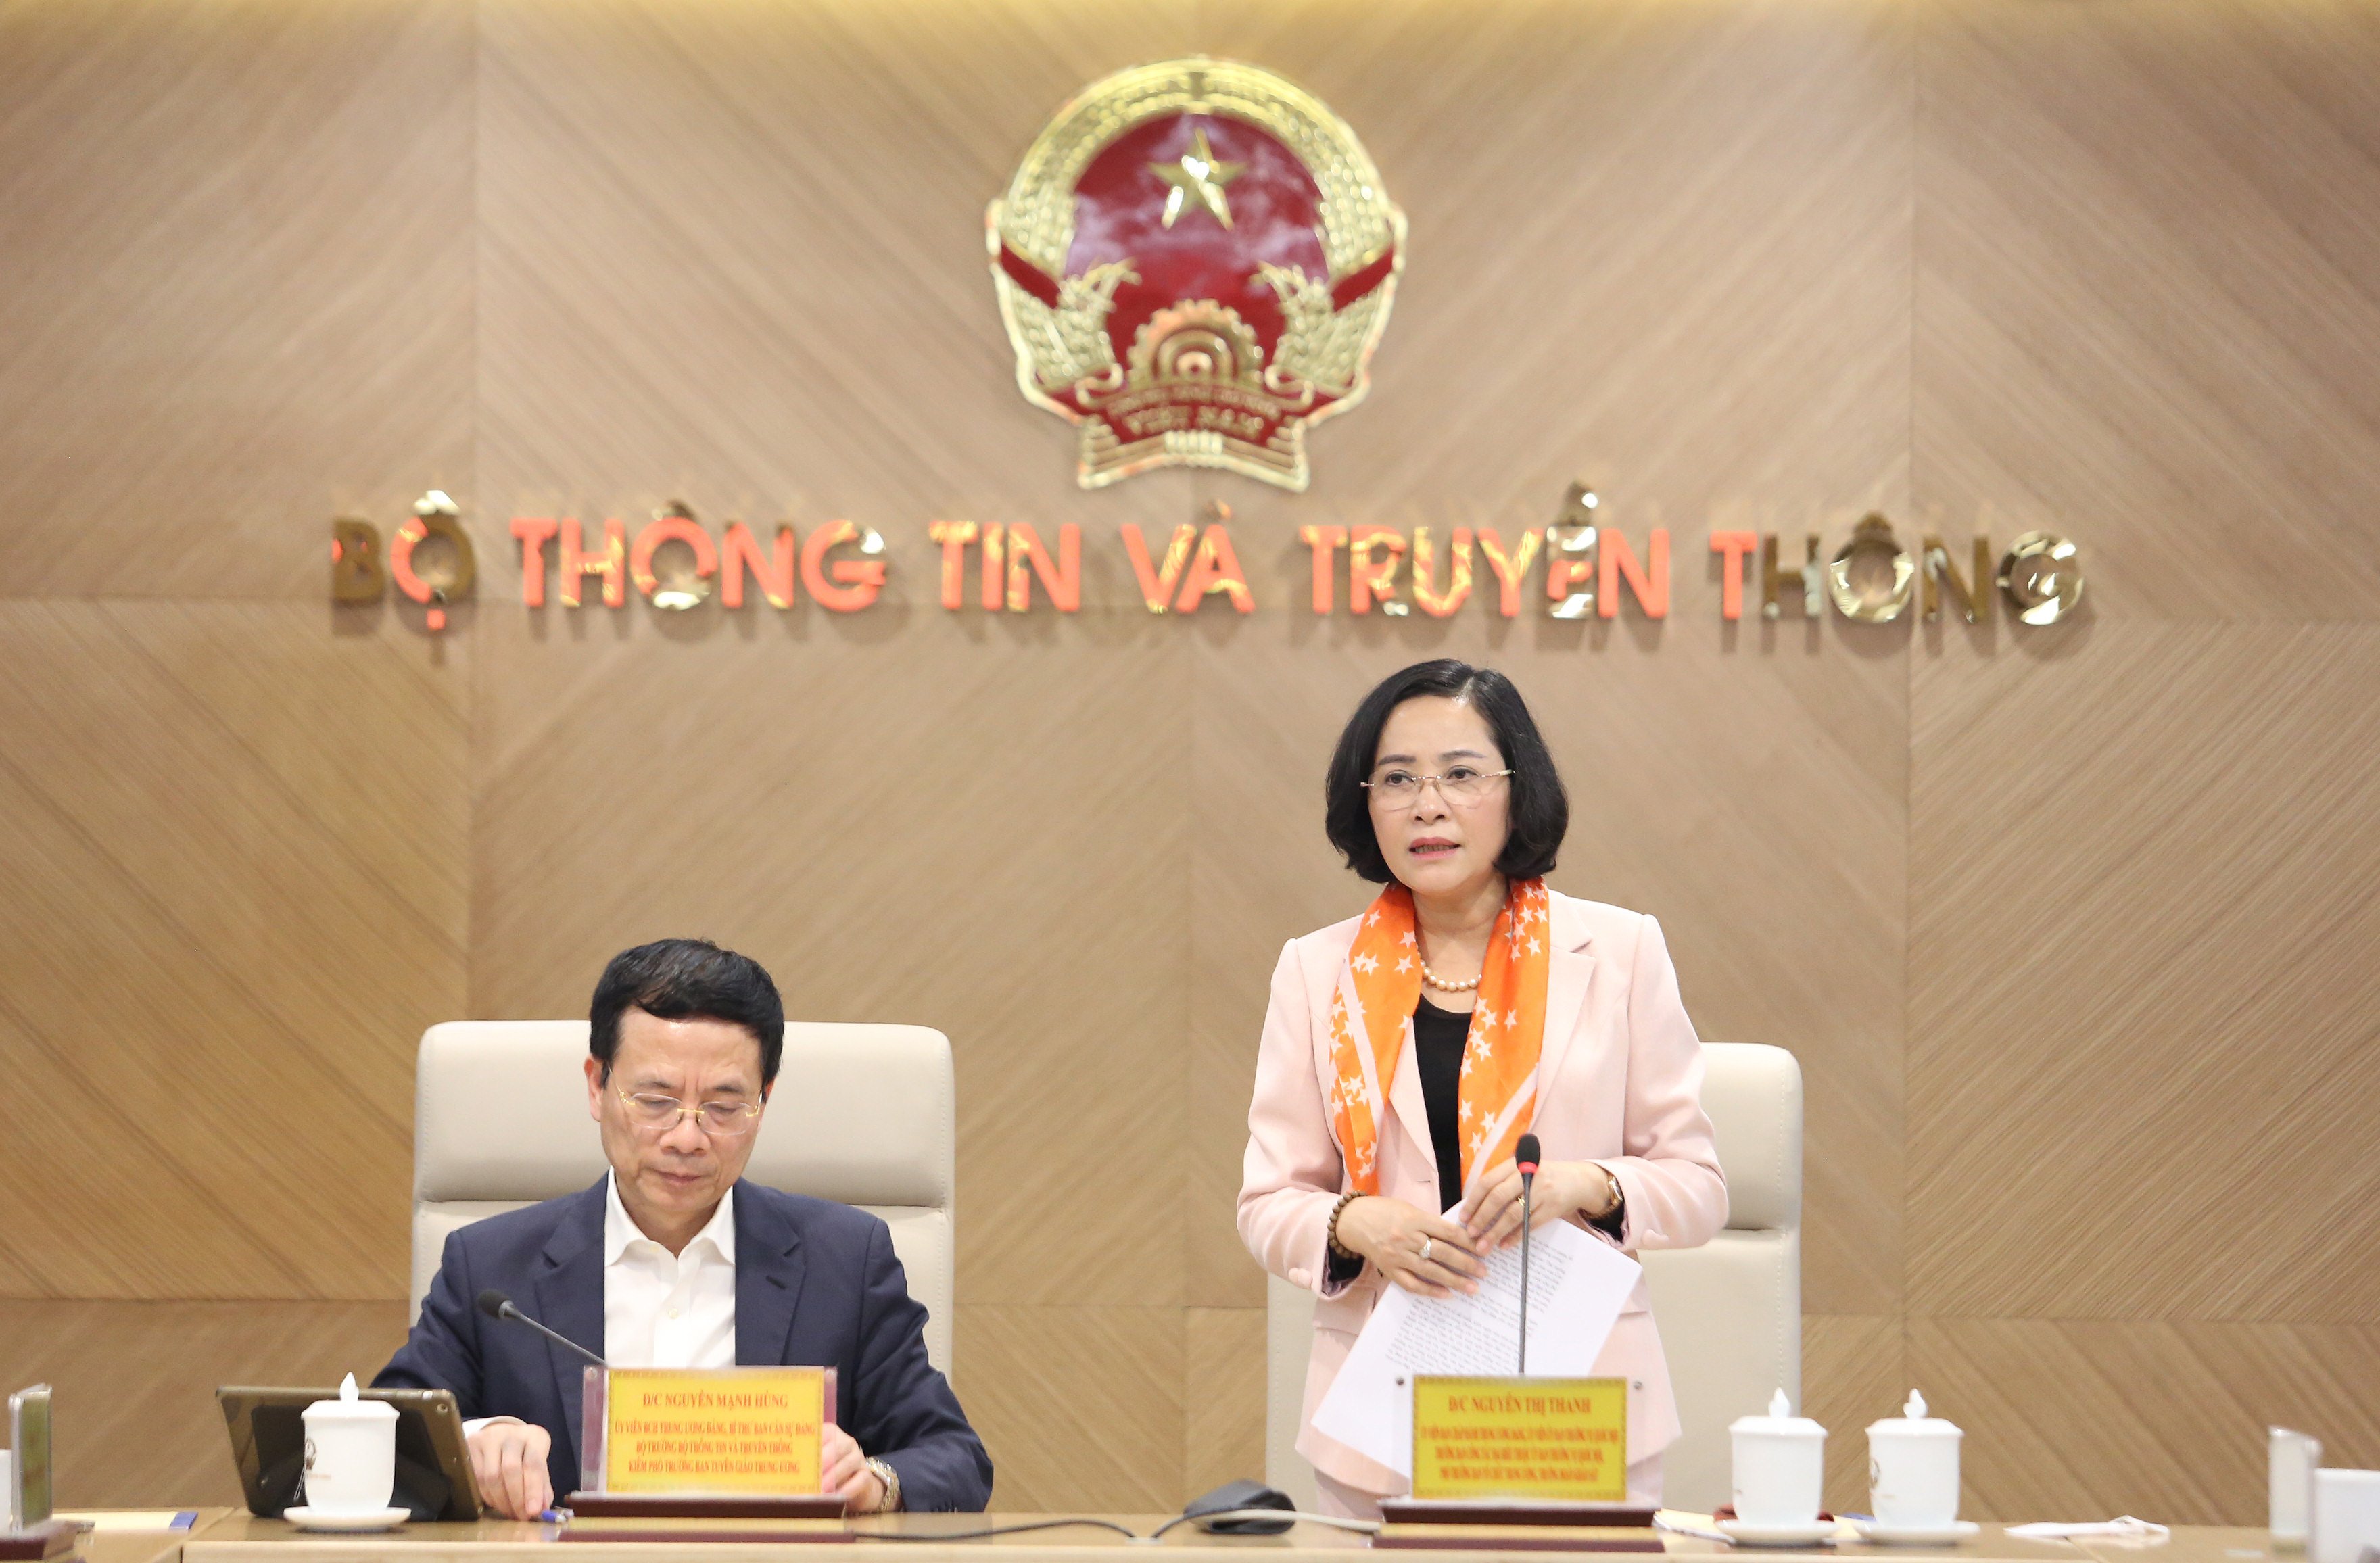 	Trưởng Ban Công tác đại biểu Nguyễn Thị Thanh phát biểu tại buổi làm việc